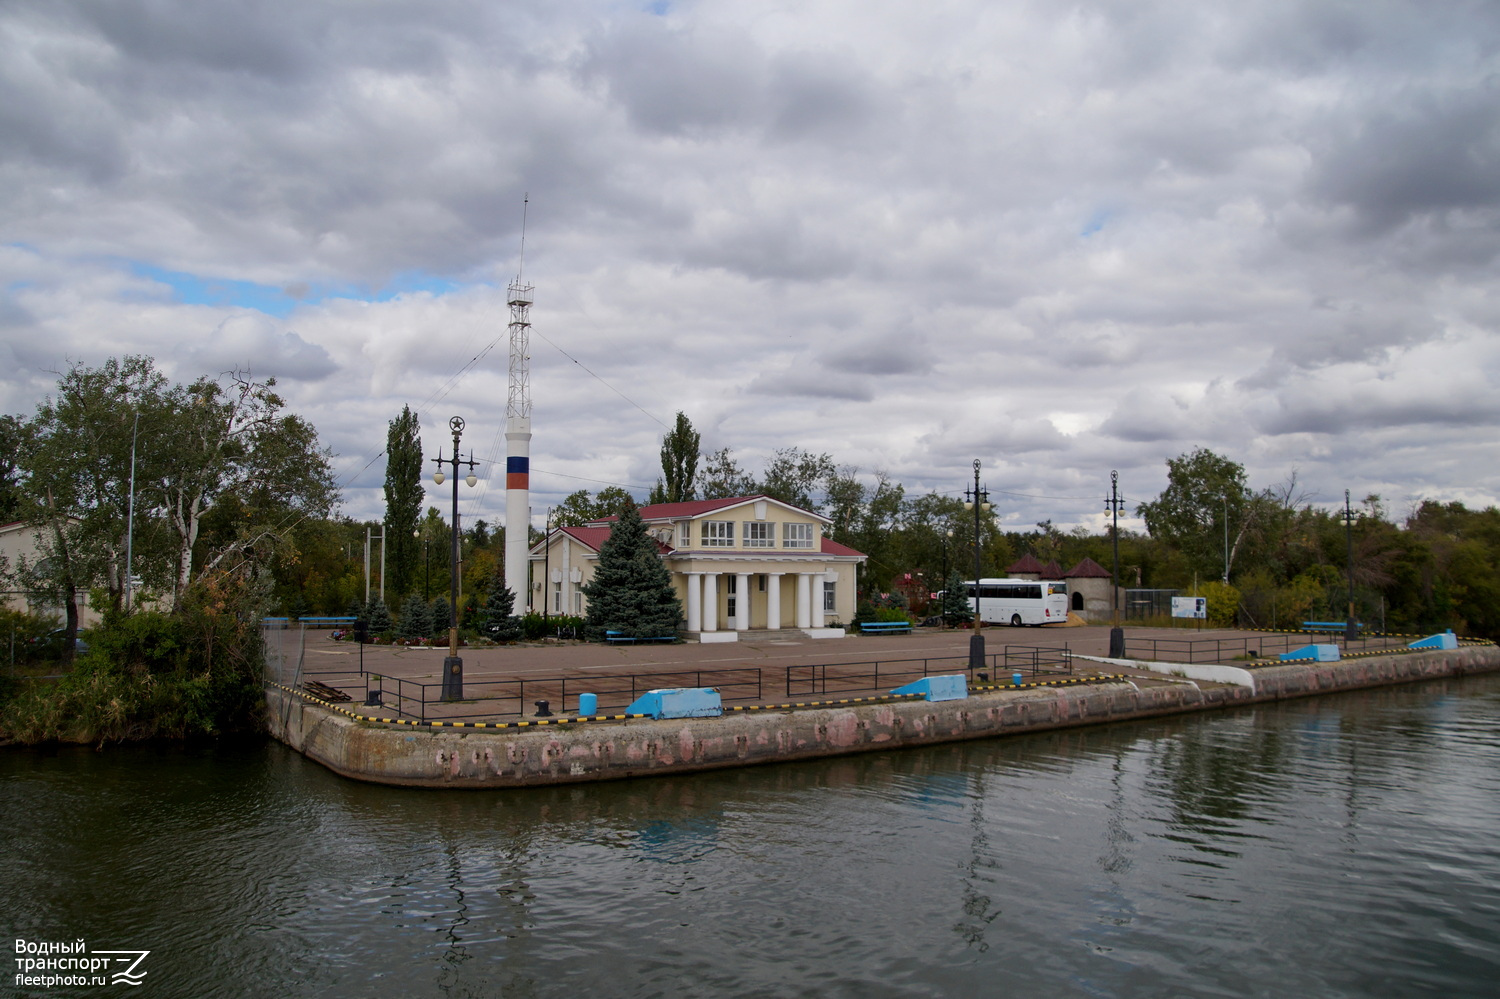 Волго-Донской судоходный канал имени Ленина